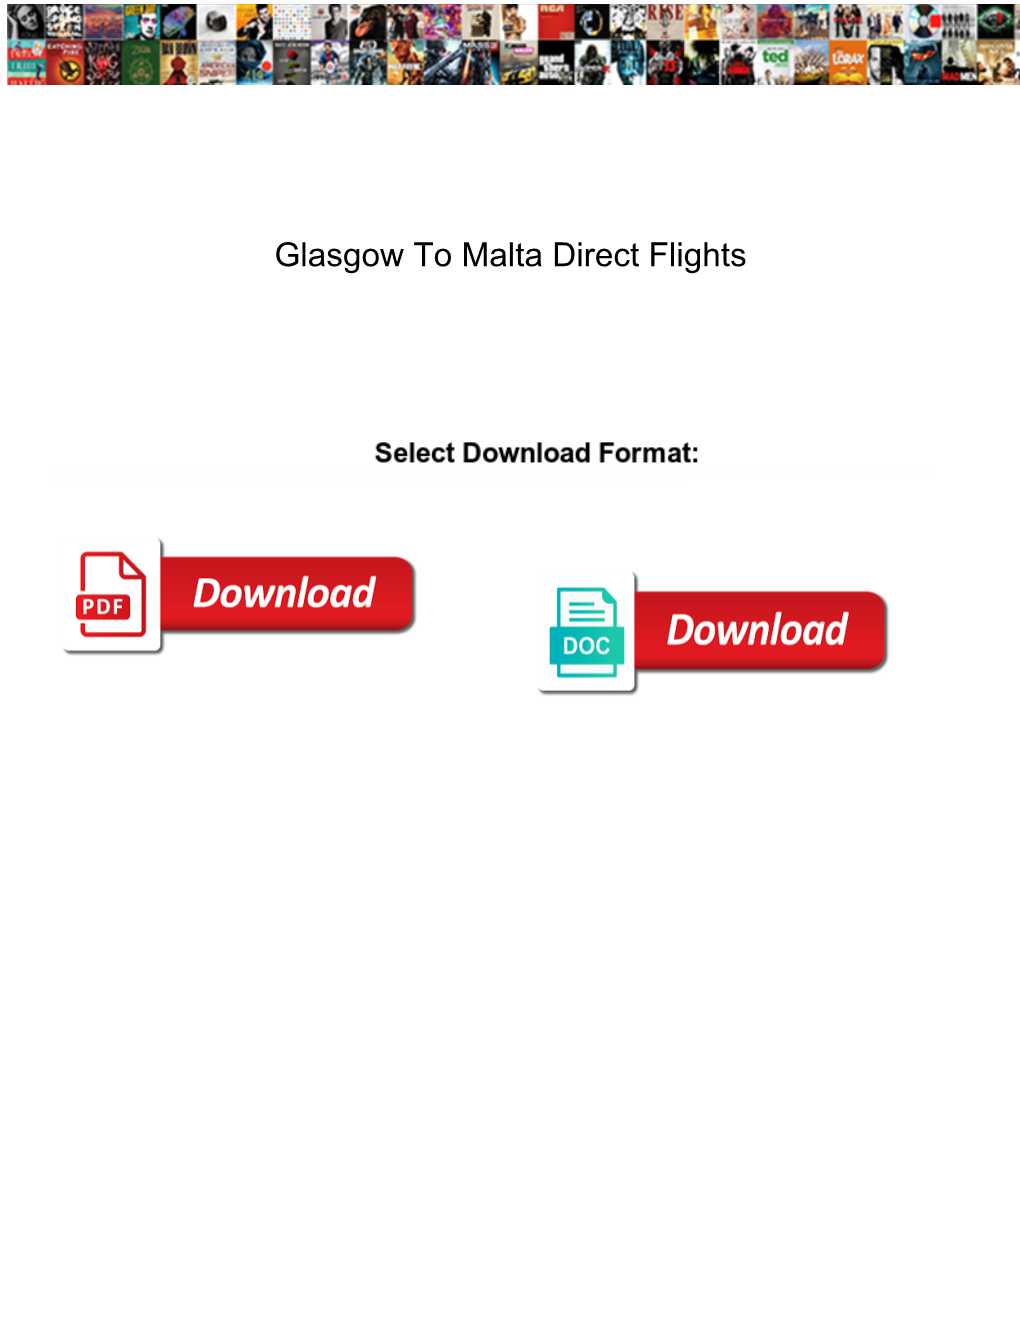 Glasgow to Malta Direct Flights